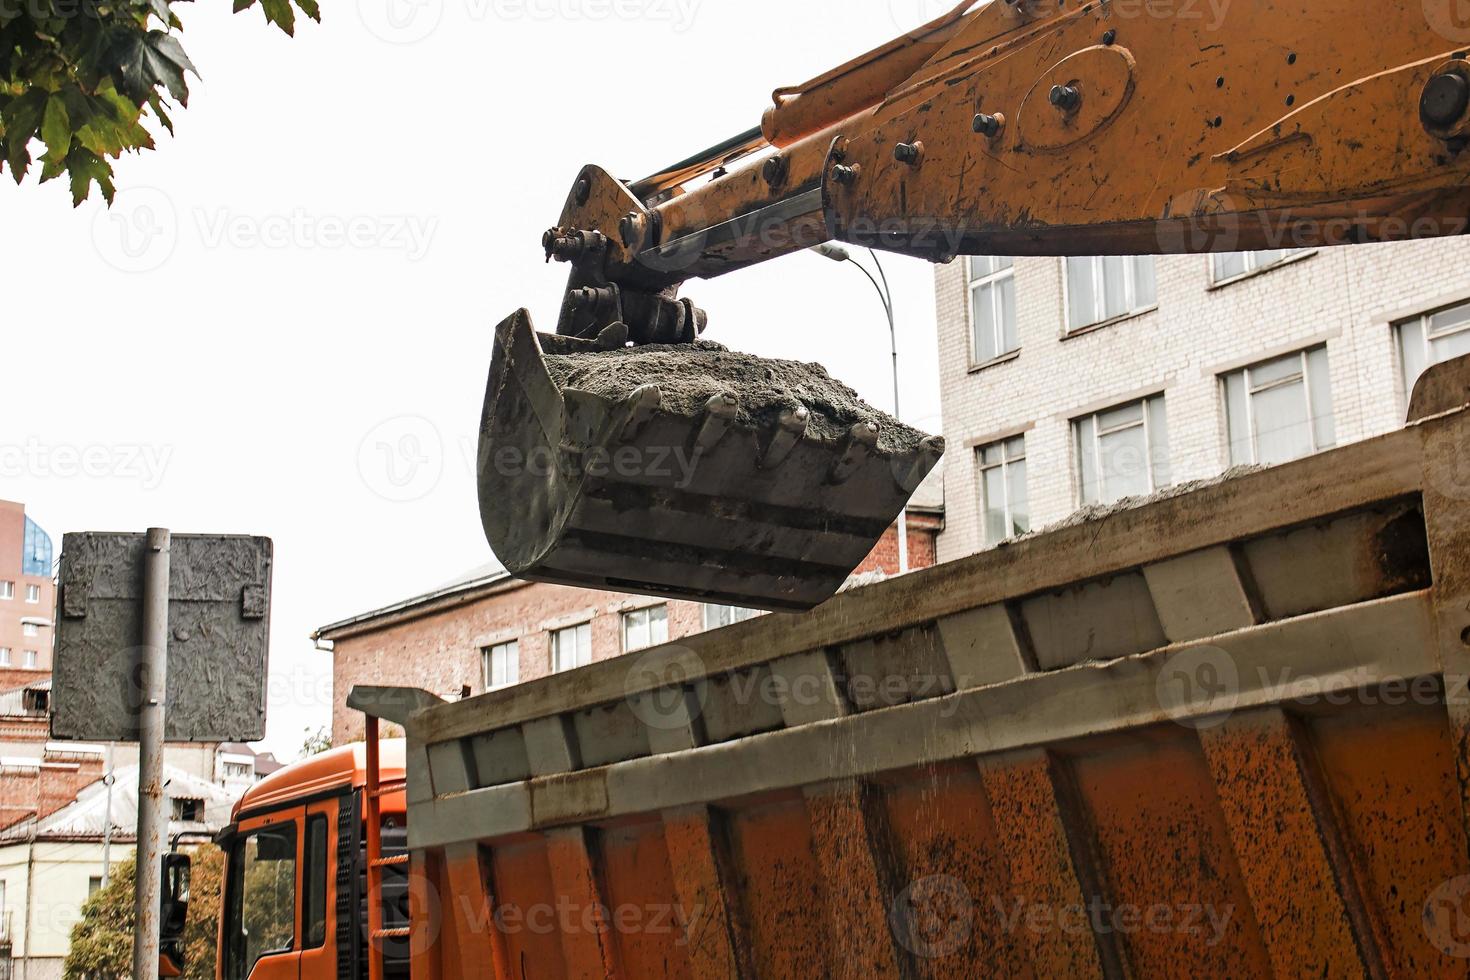 Straßenarbeiten auf der Stadtstraße. die baggerschaufel sammelt das alte pflaster und lädt es in einen muldenkipper foto